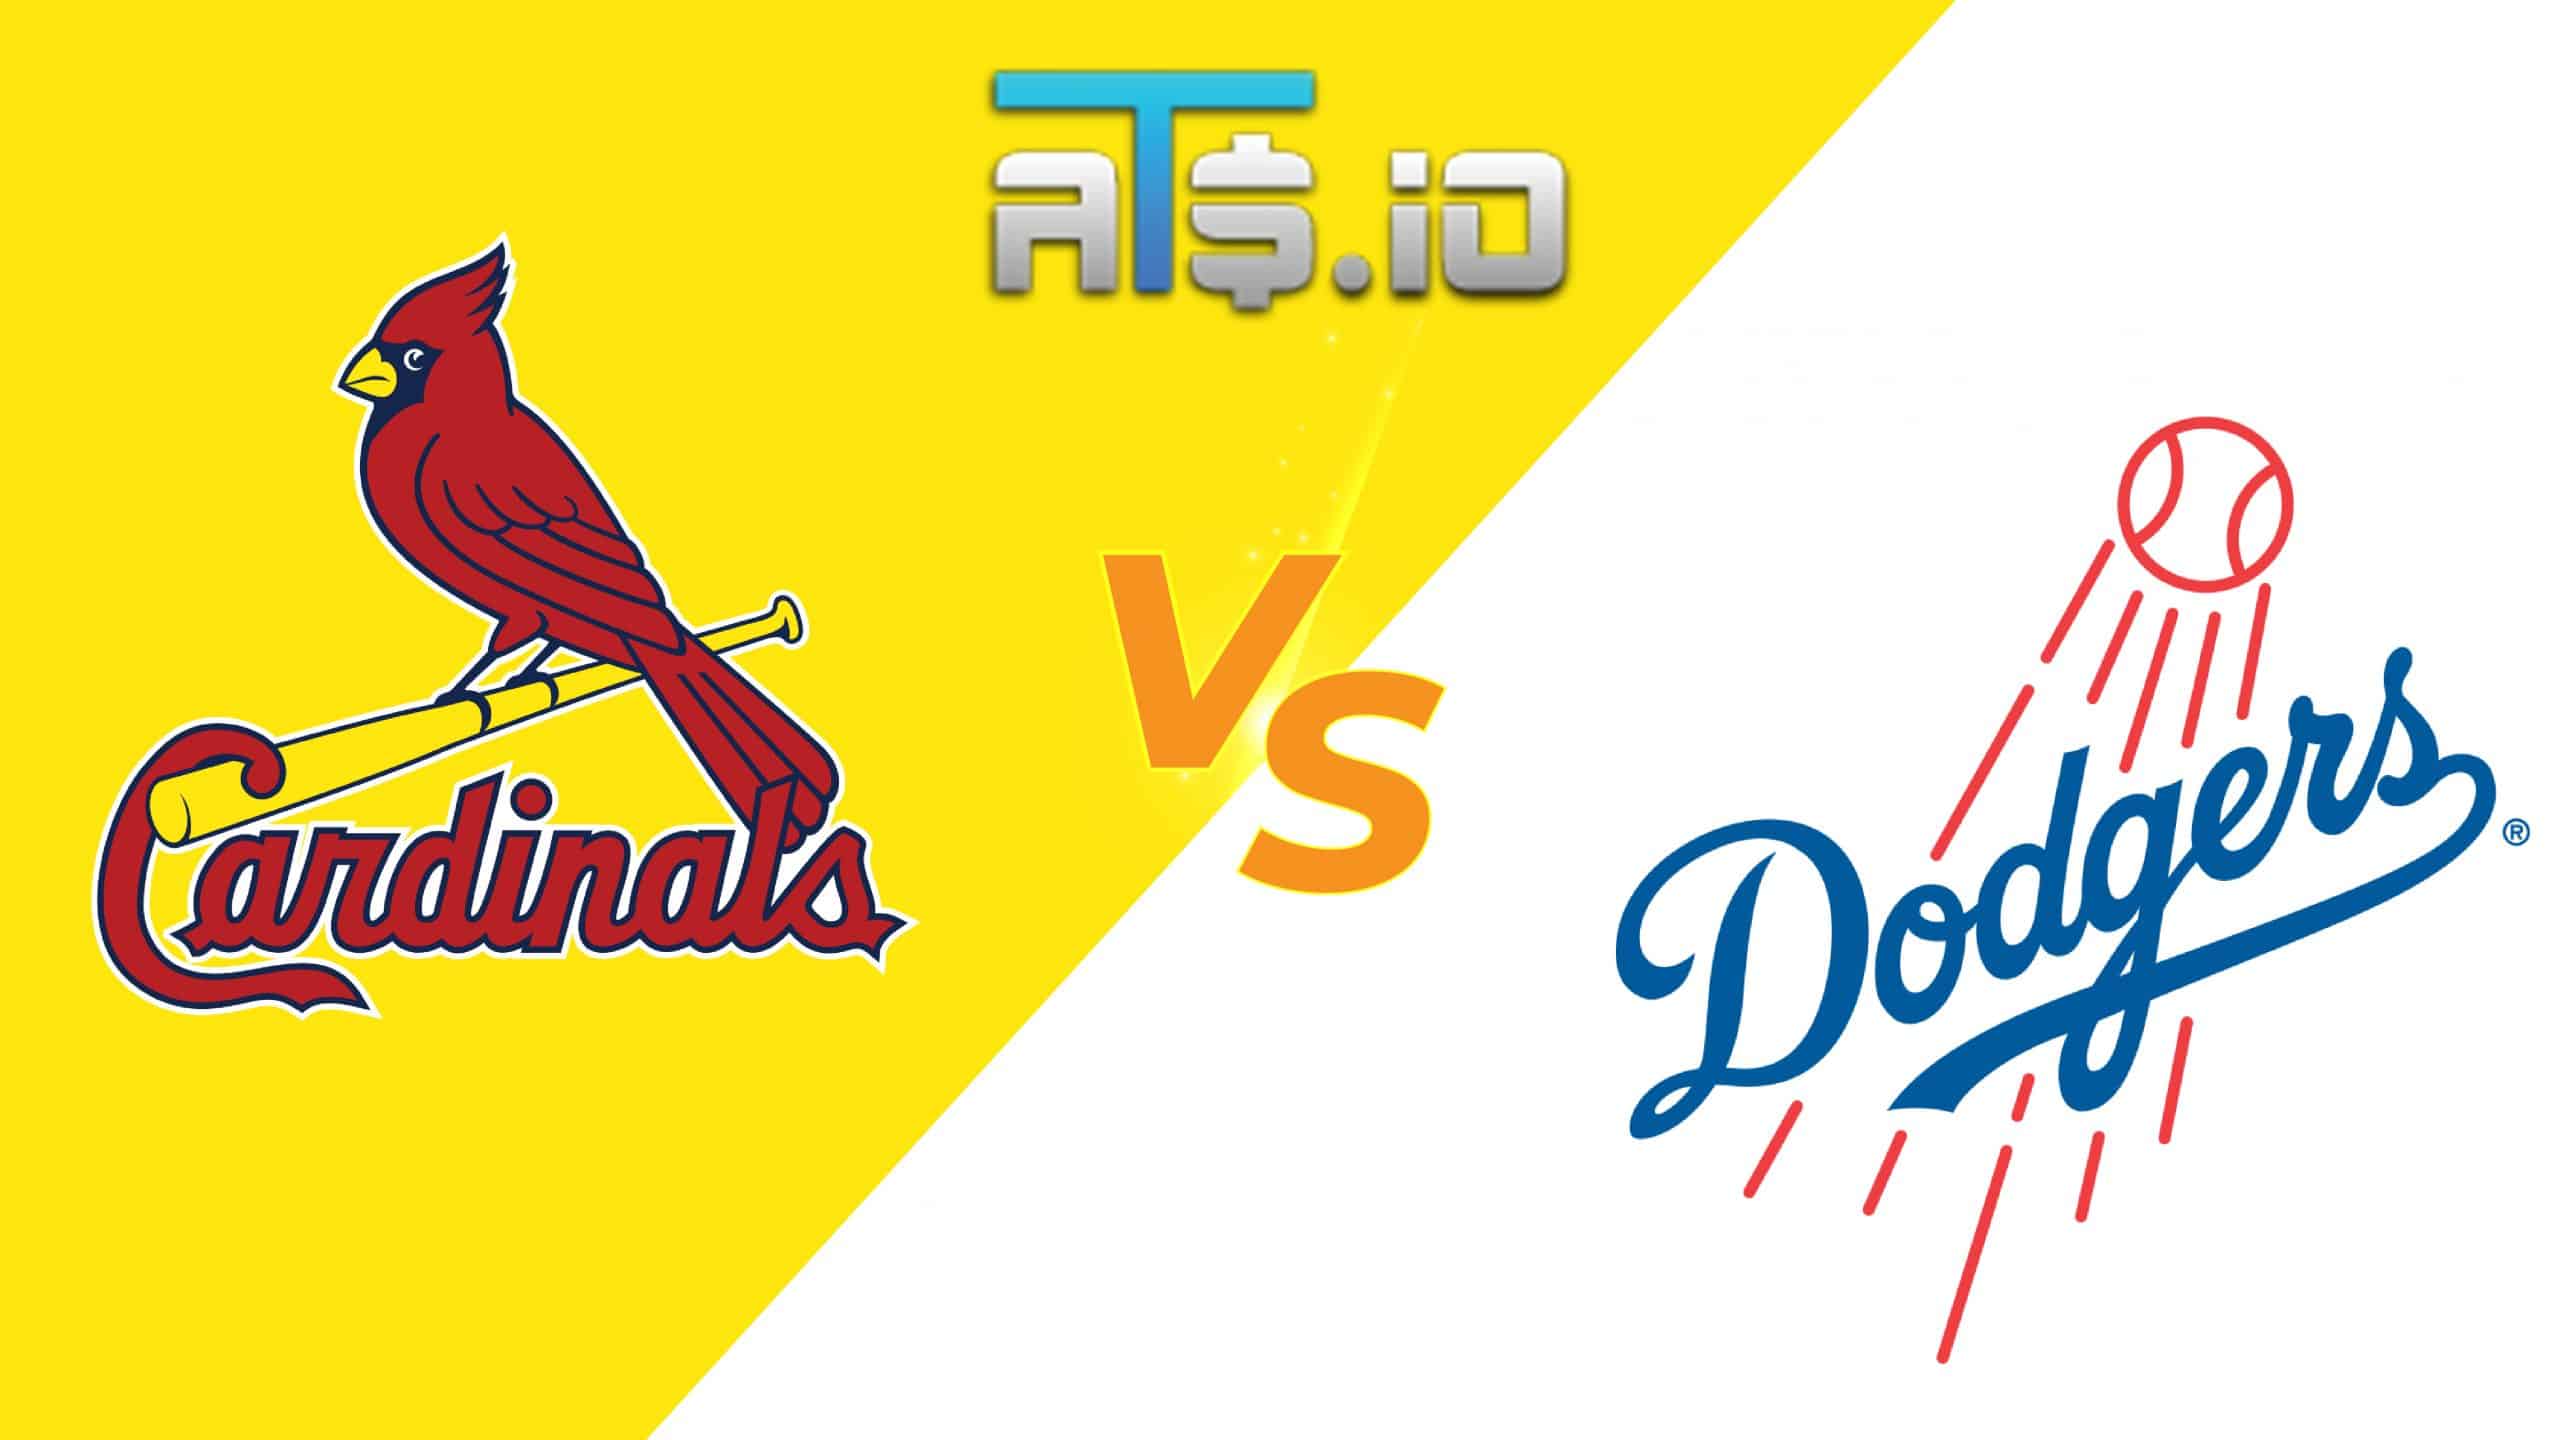 St. Louis Cardinals vs Los Angeles Dodgers Pick & Prediction